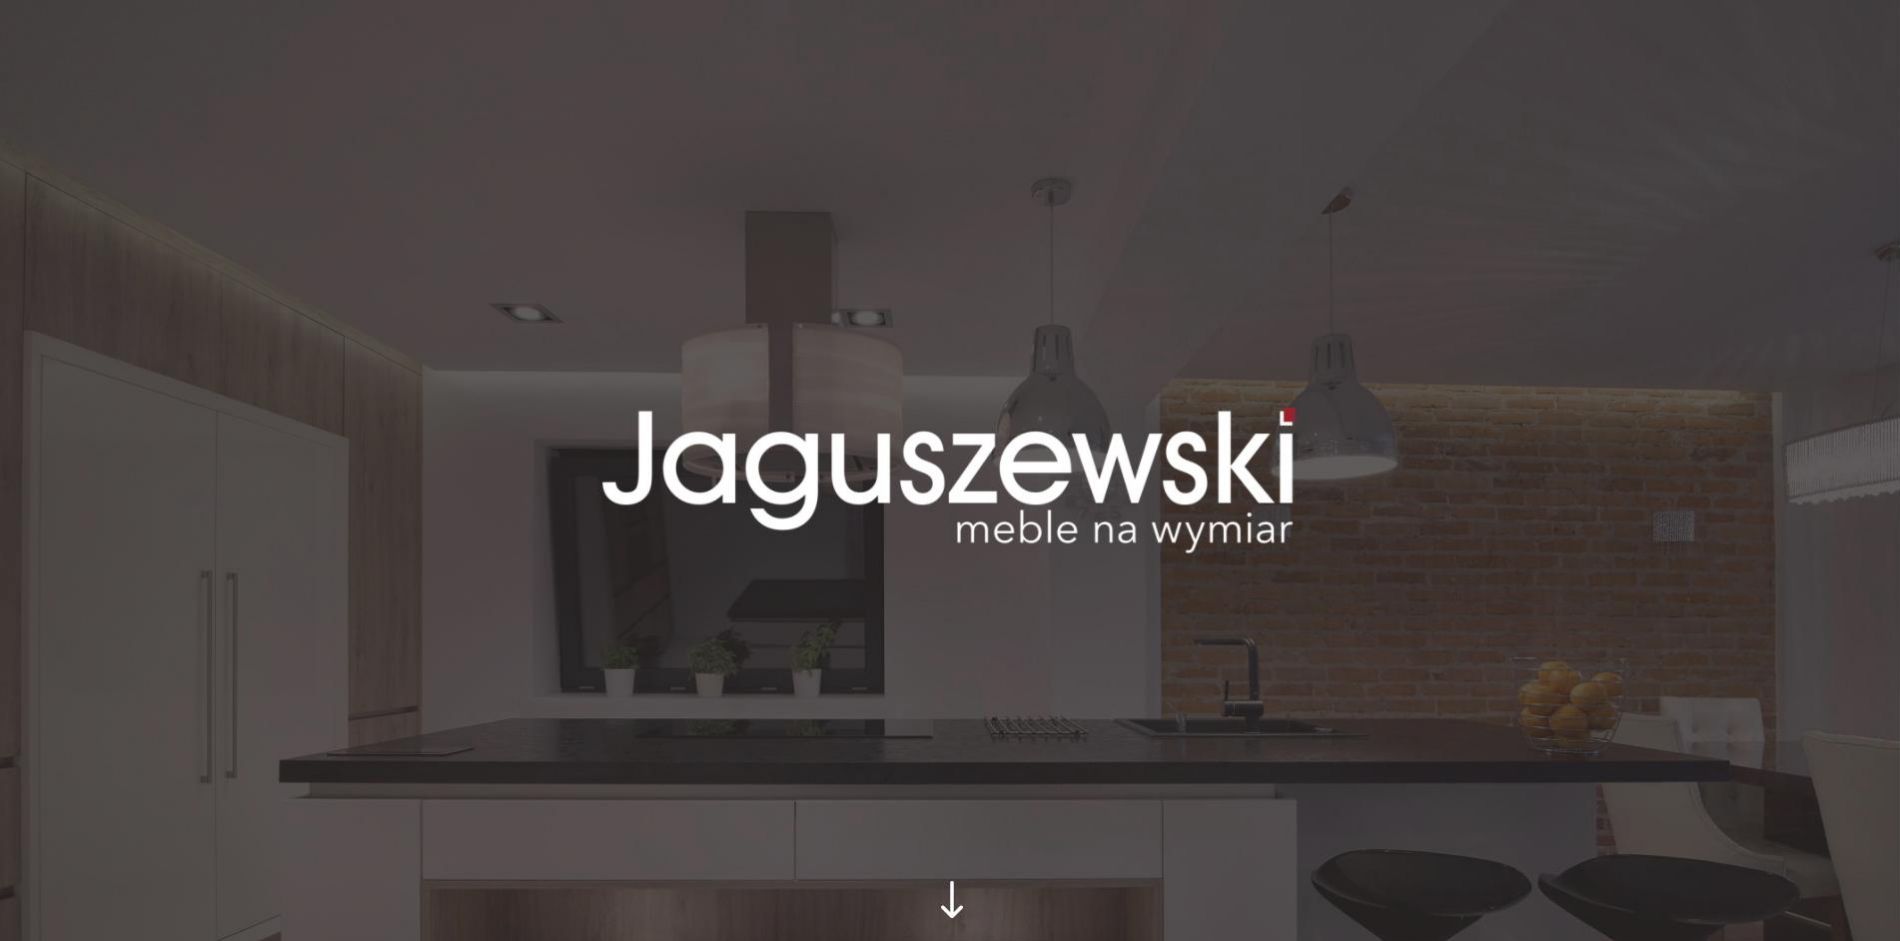 Jaguszewski – meble na wymiar